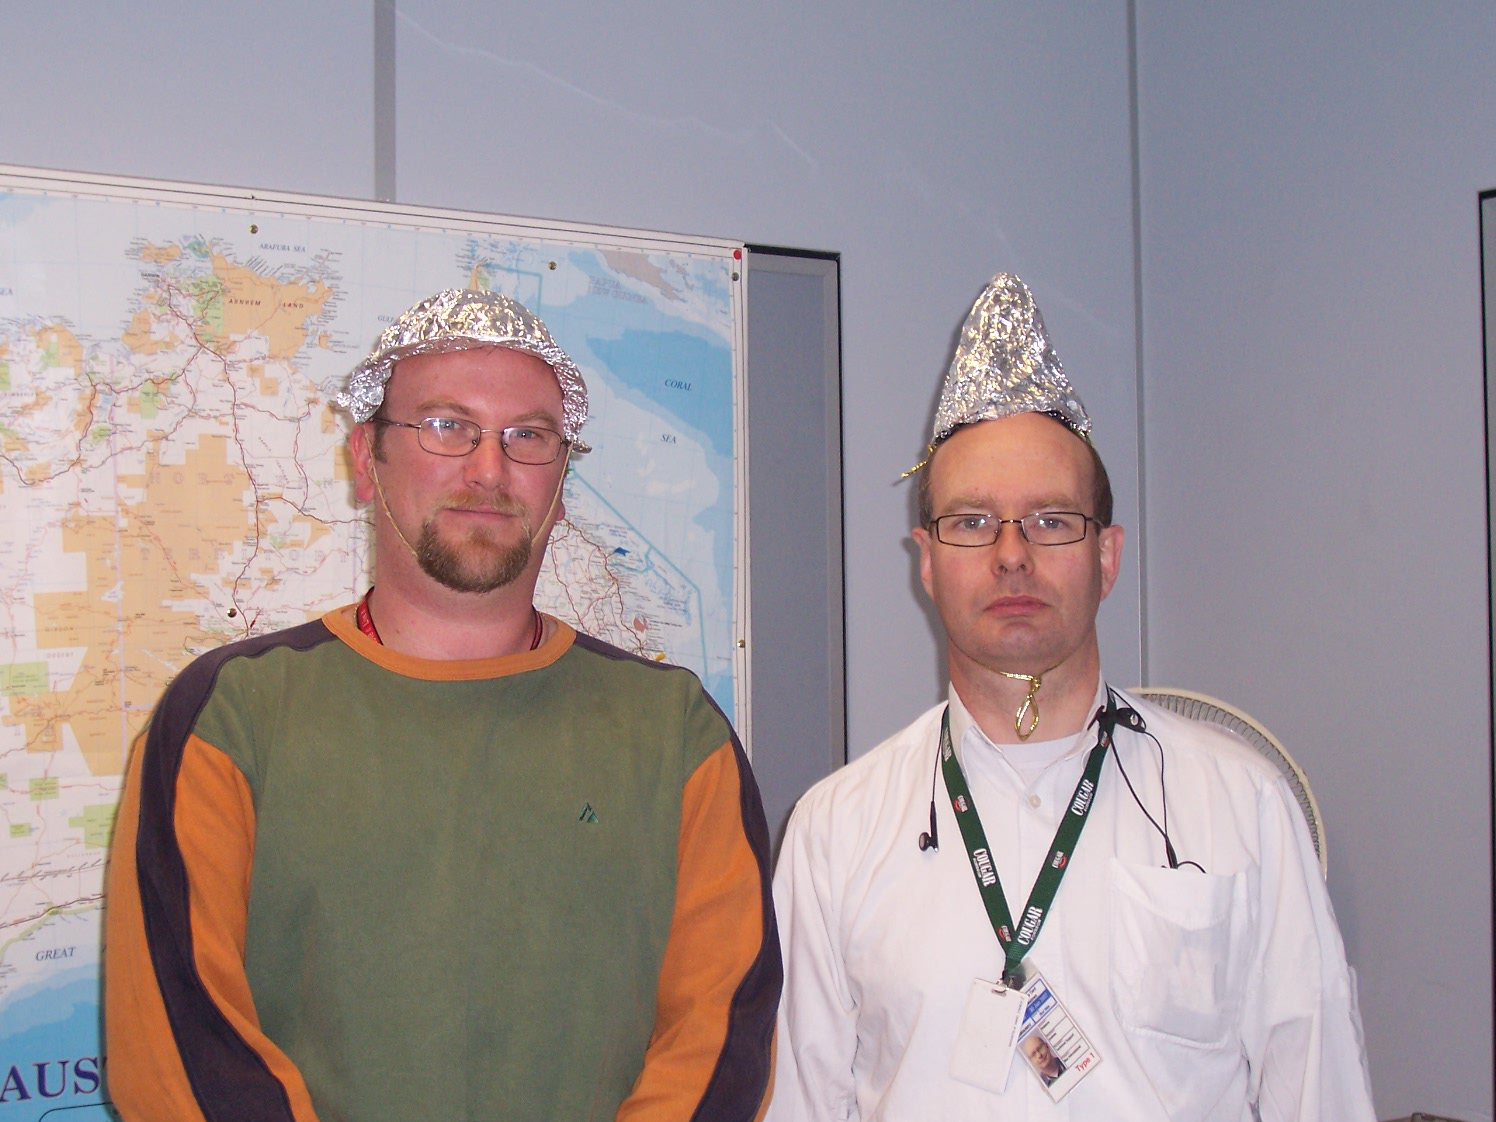 Tin foil hat - Wikipedia